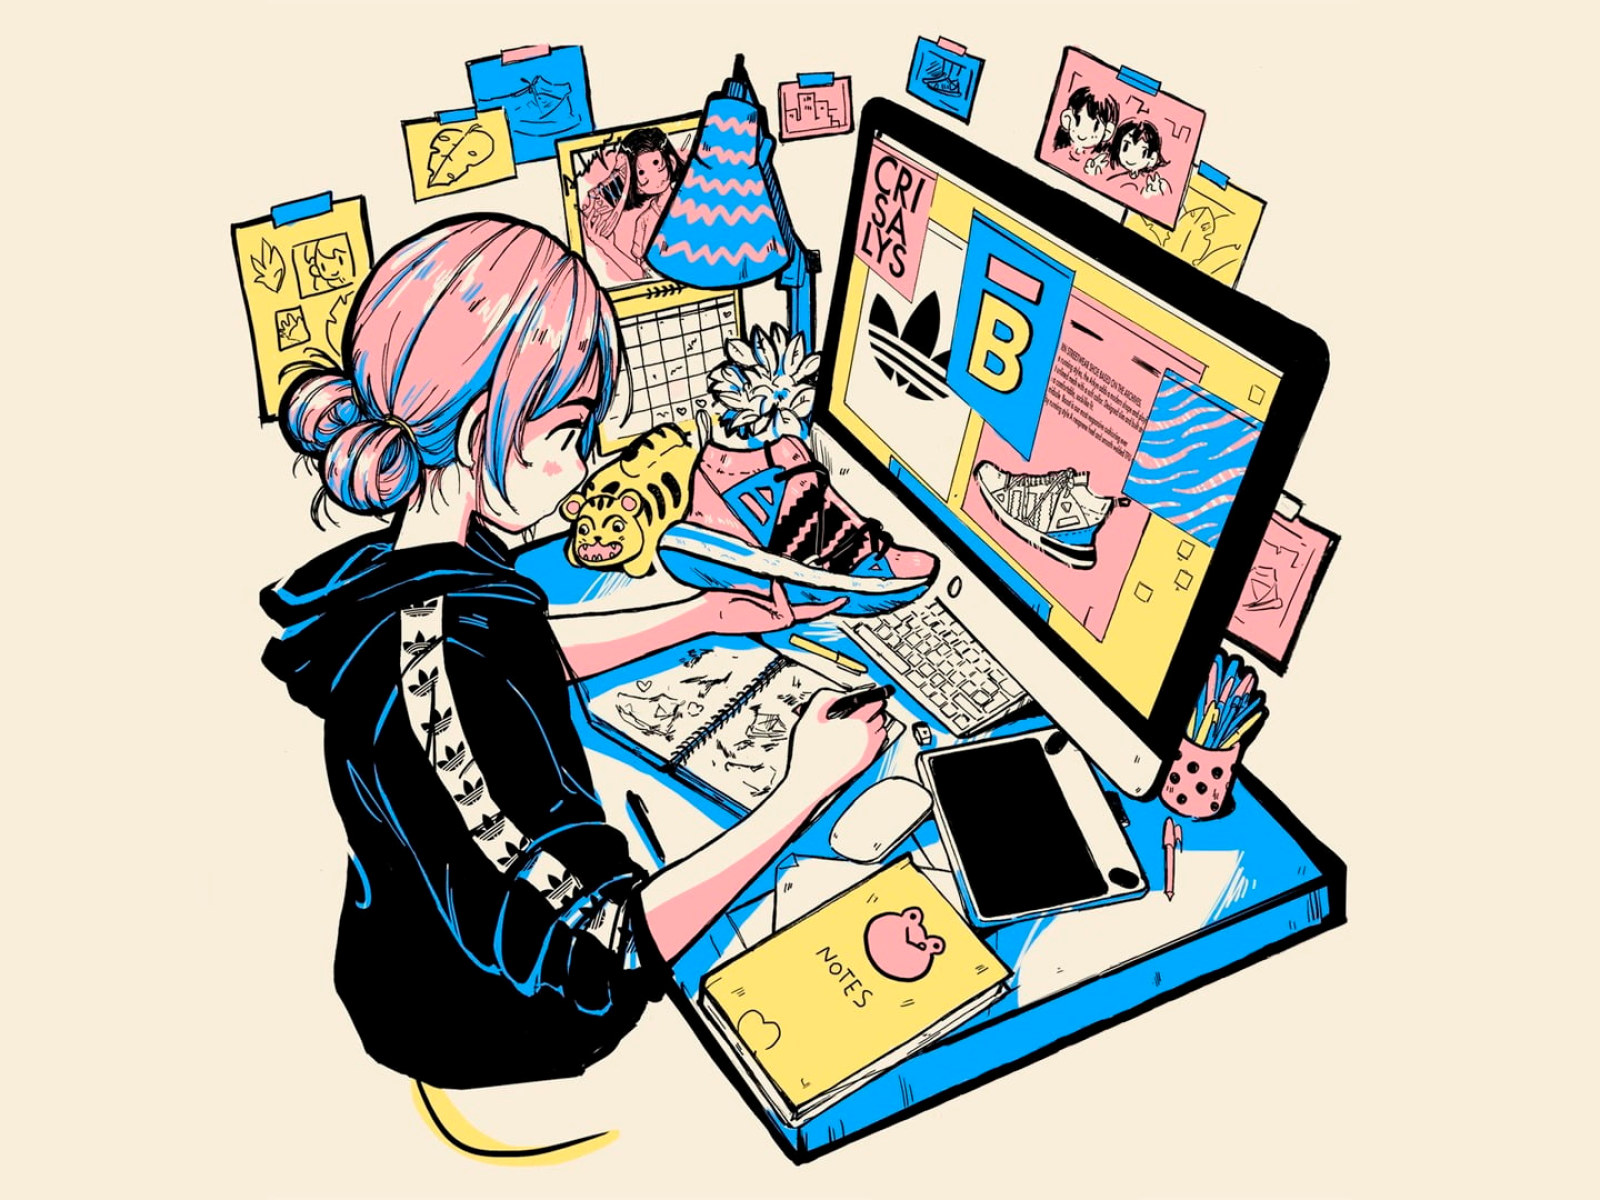 Anime sneaker wallpaper, manga, anime girls, computer, designer, Photohop, simple background • Wallpaper For You HD Wallpaper For Desktop & Mobile